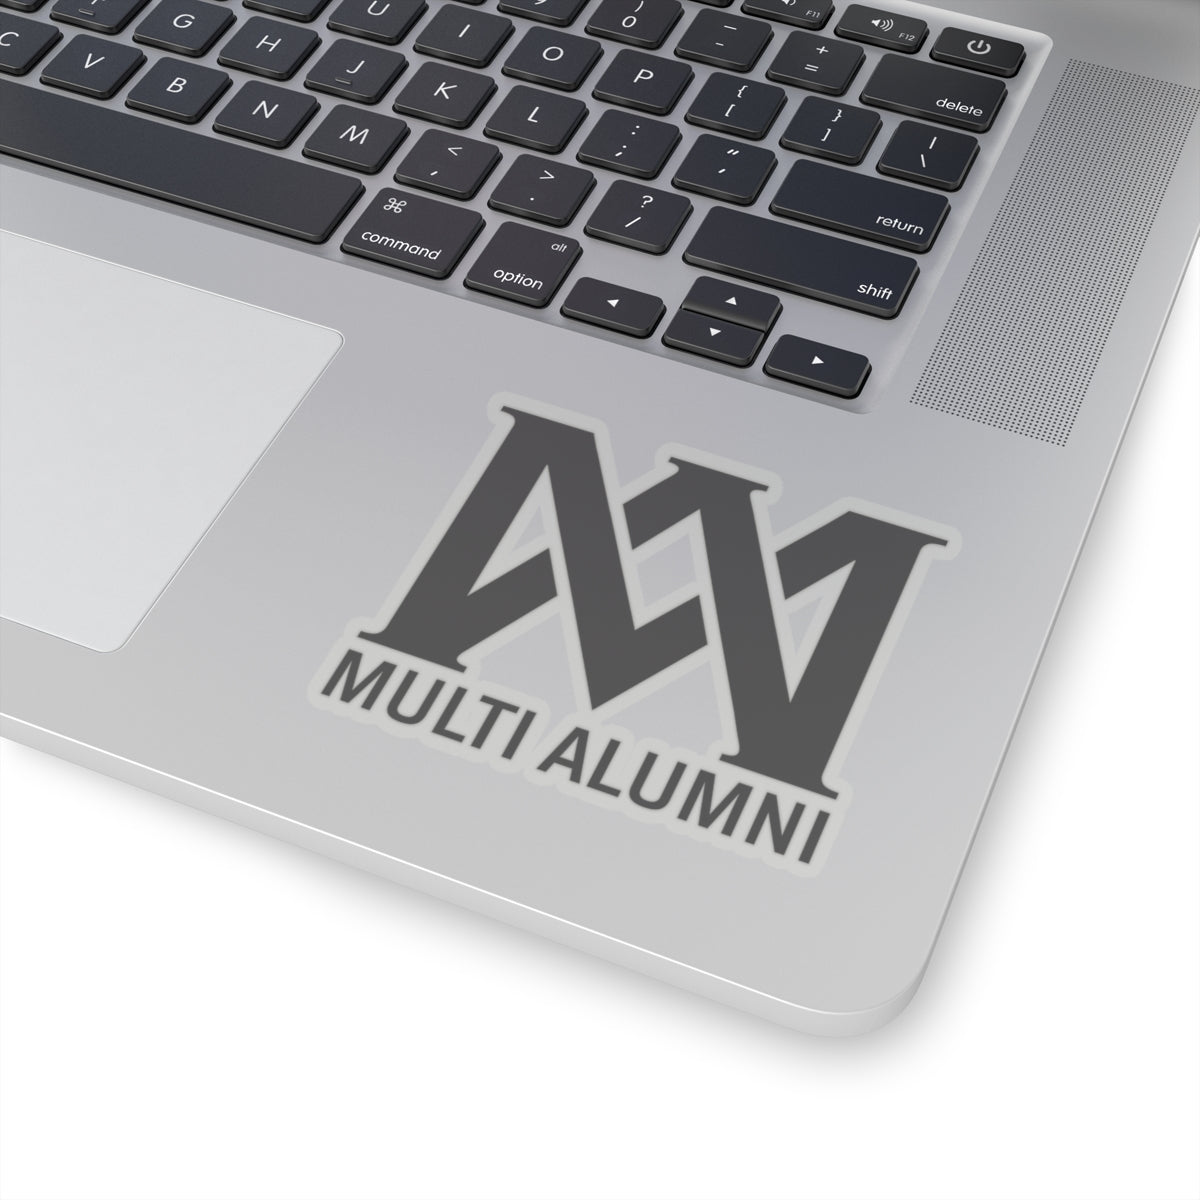 Multi Alumni Kiss-Cut Stickers